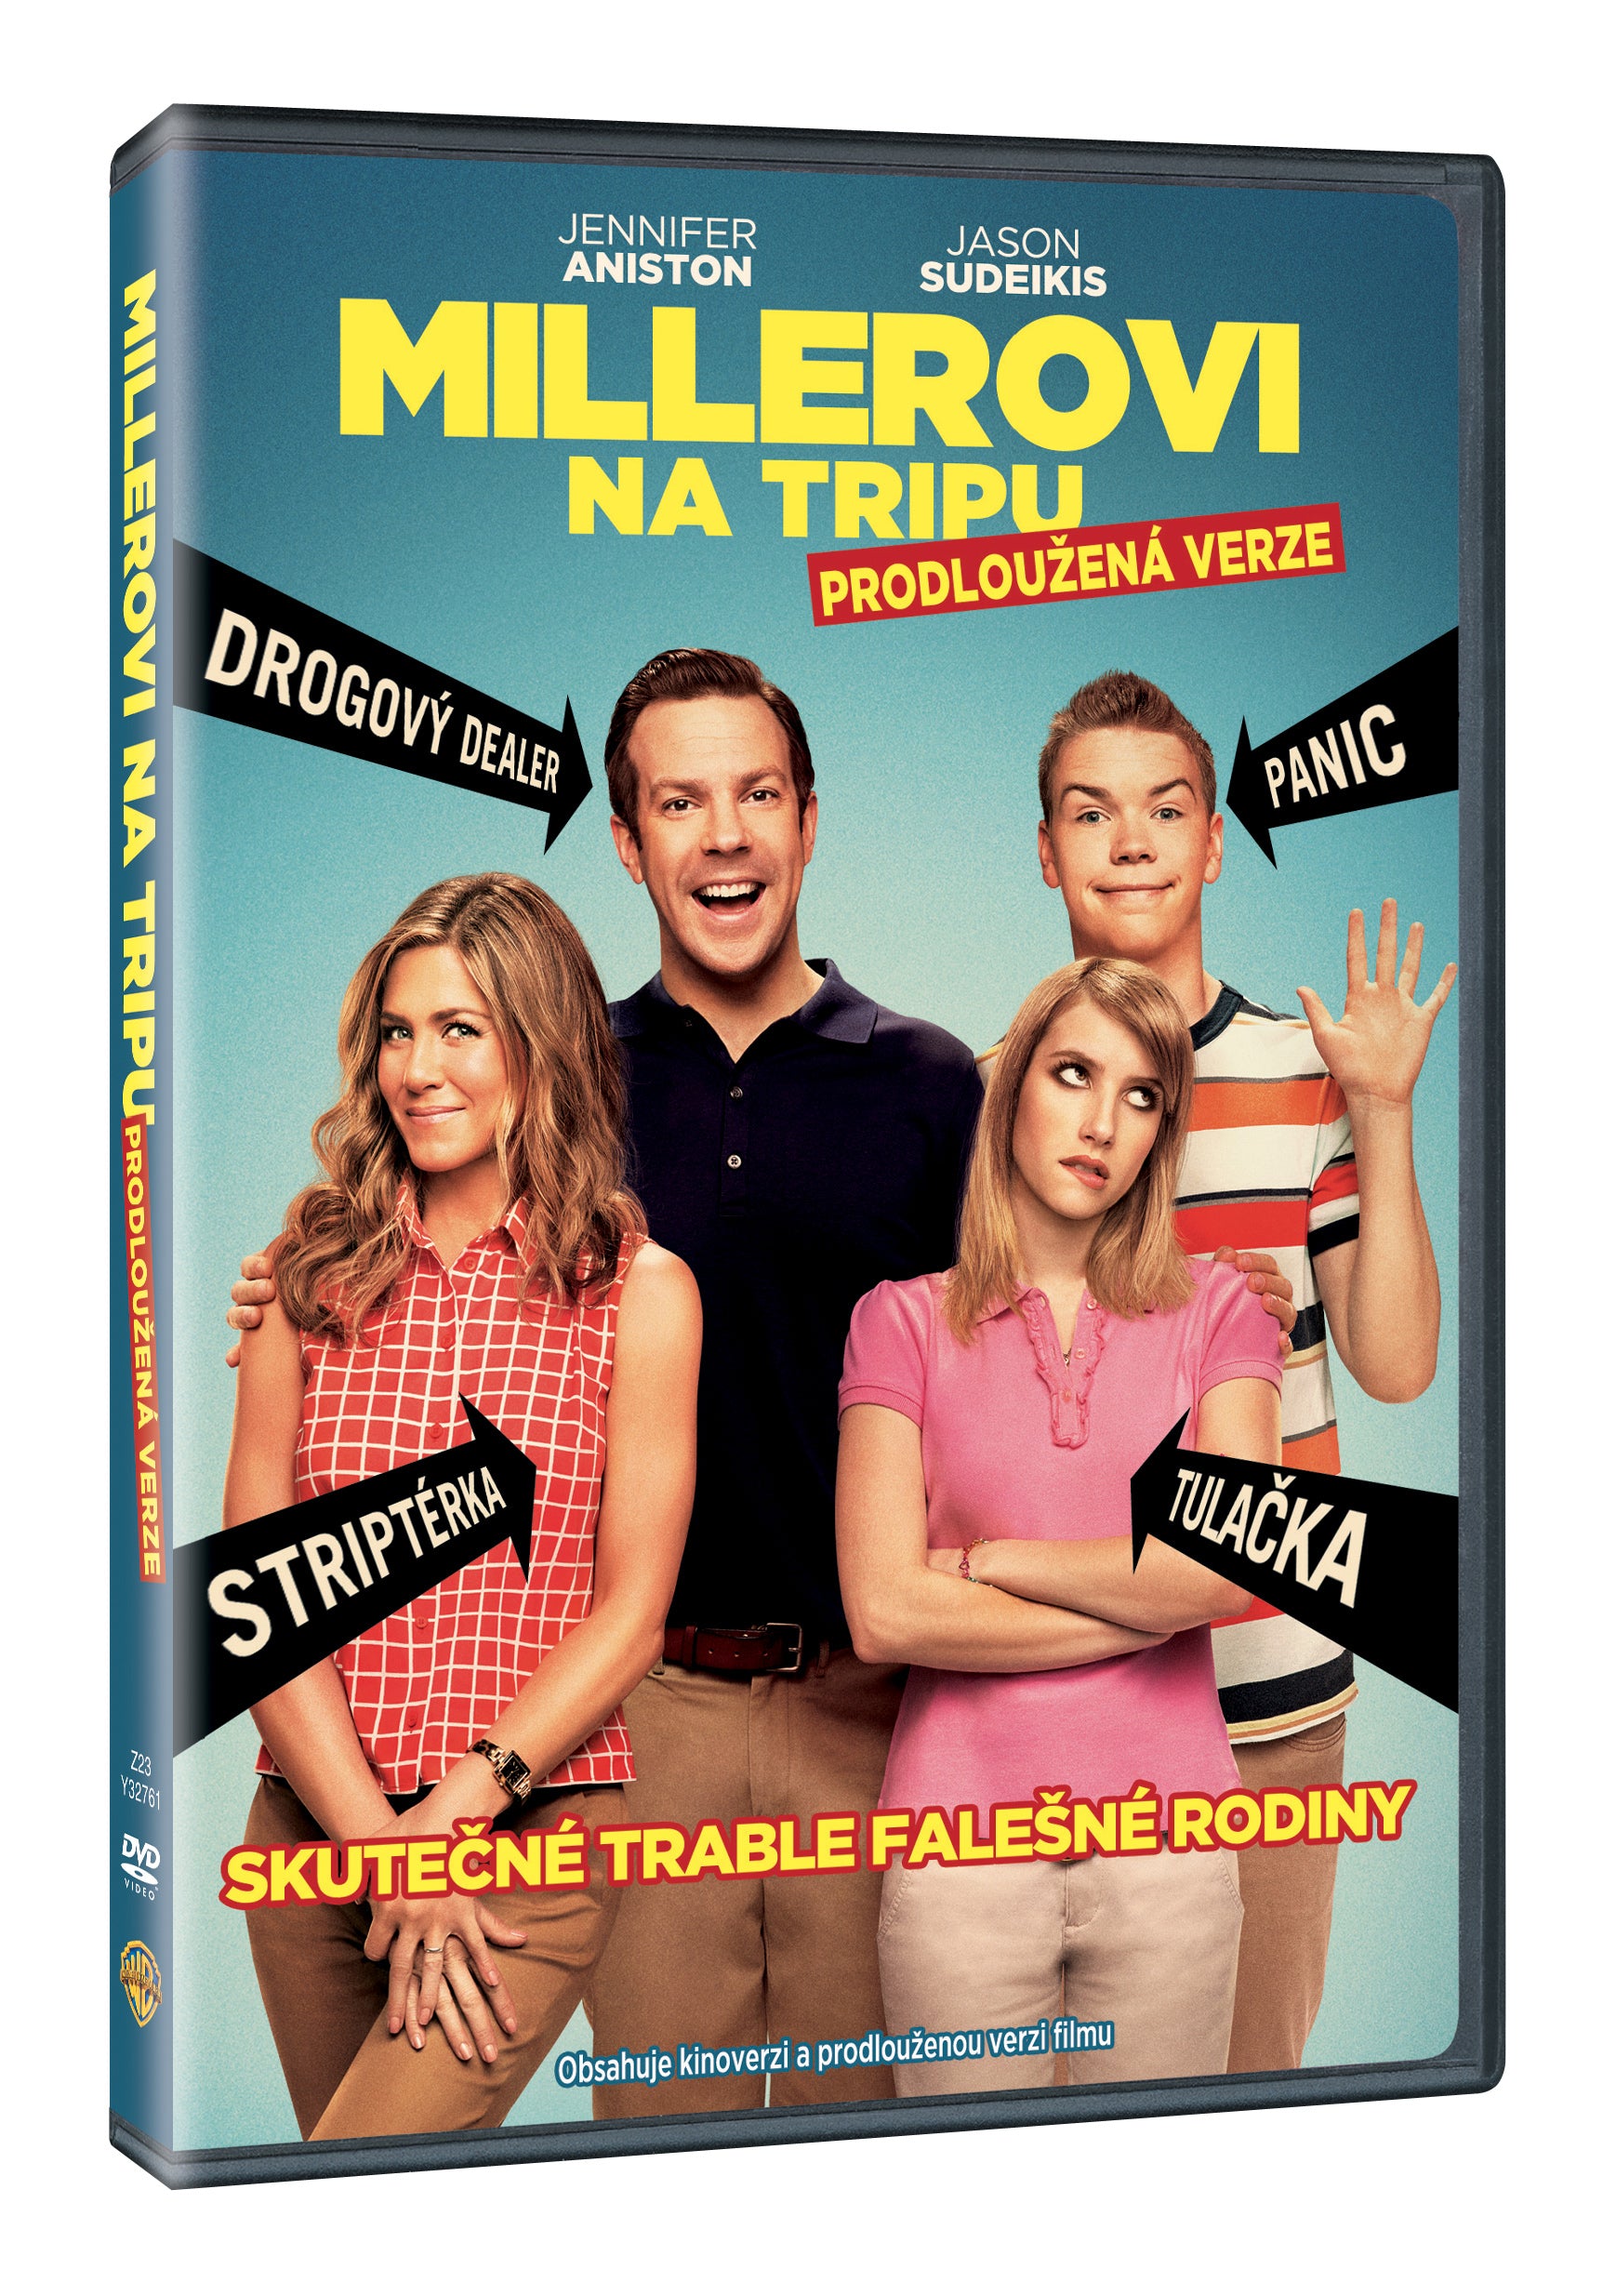 Millerovi na tripu DVD / We´re The Millers